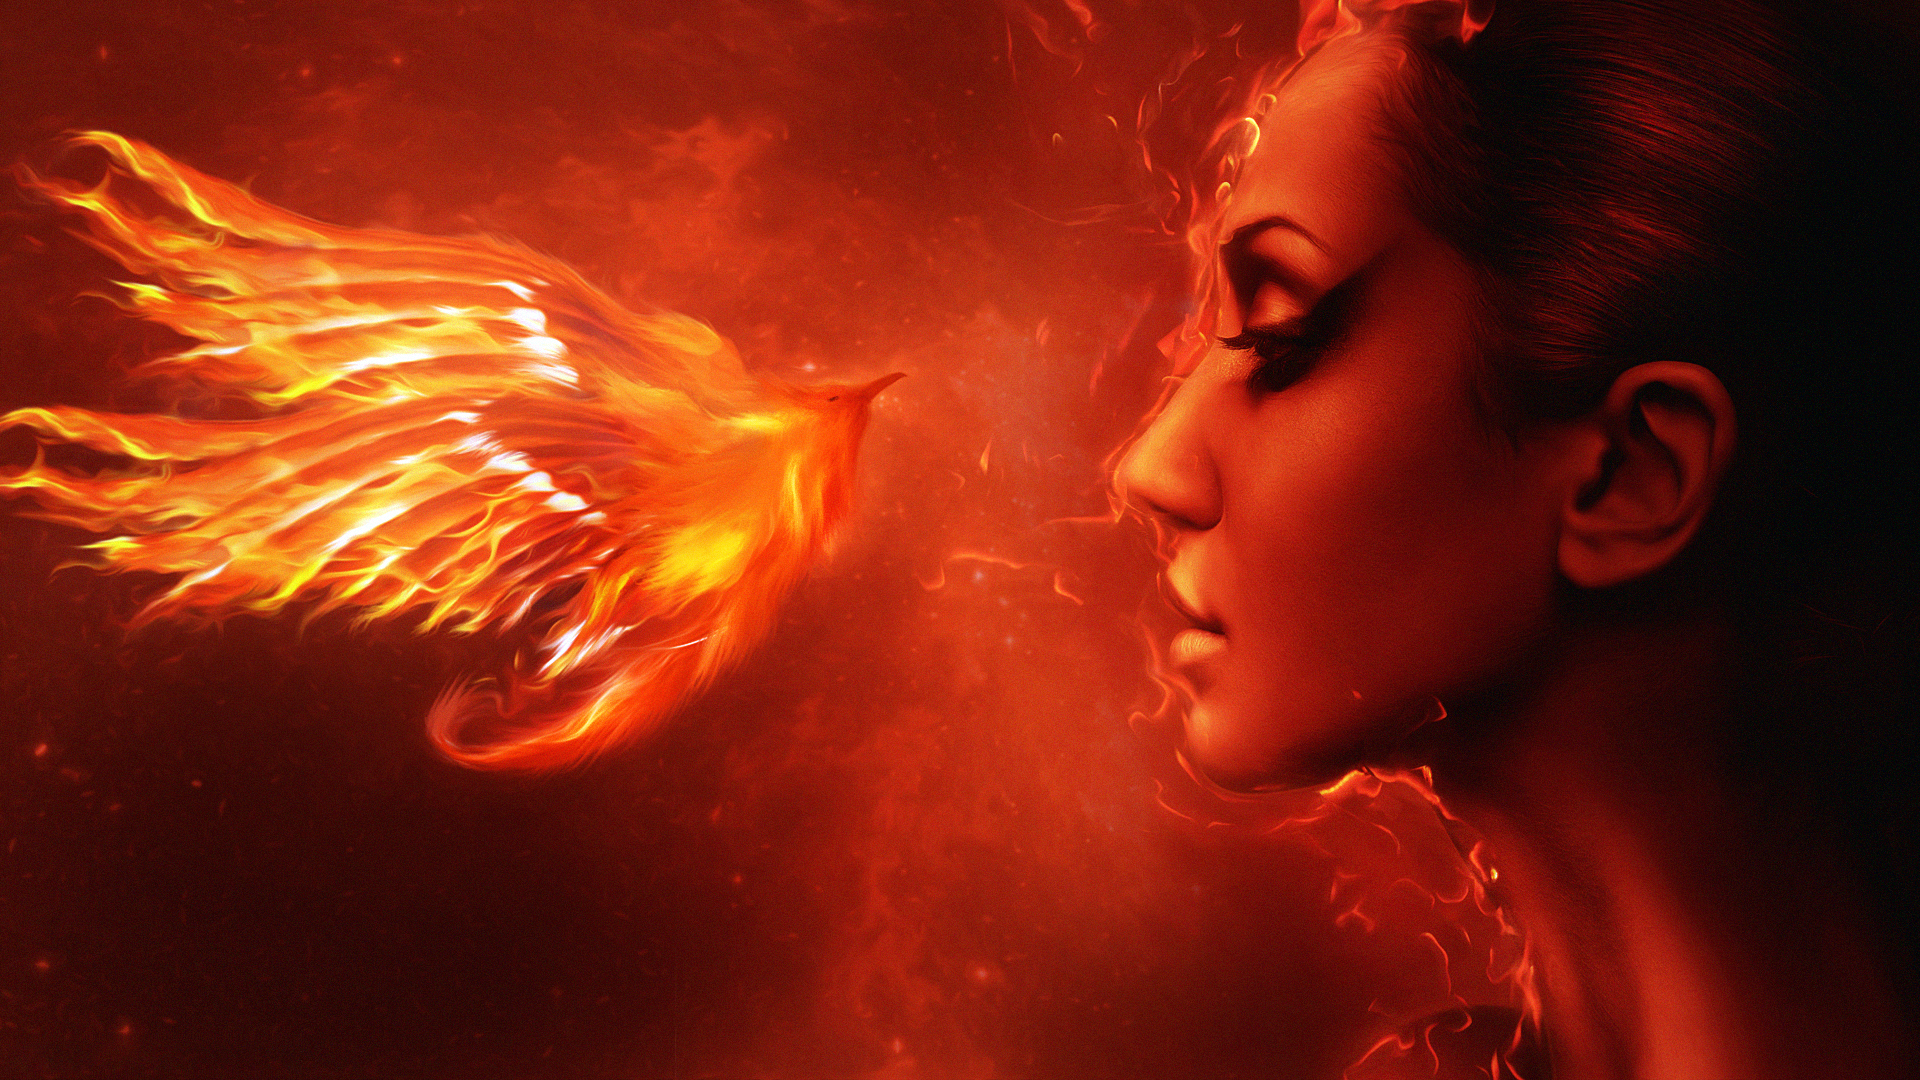 Free download wallpaper Fantasy, Fire, Phoenix, Women on your PC desktop